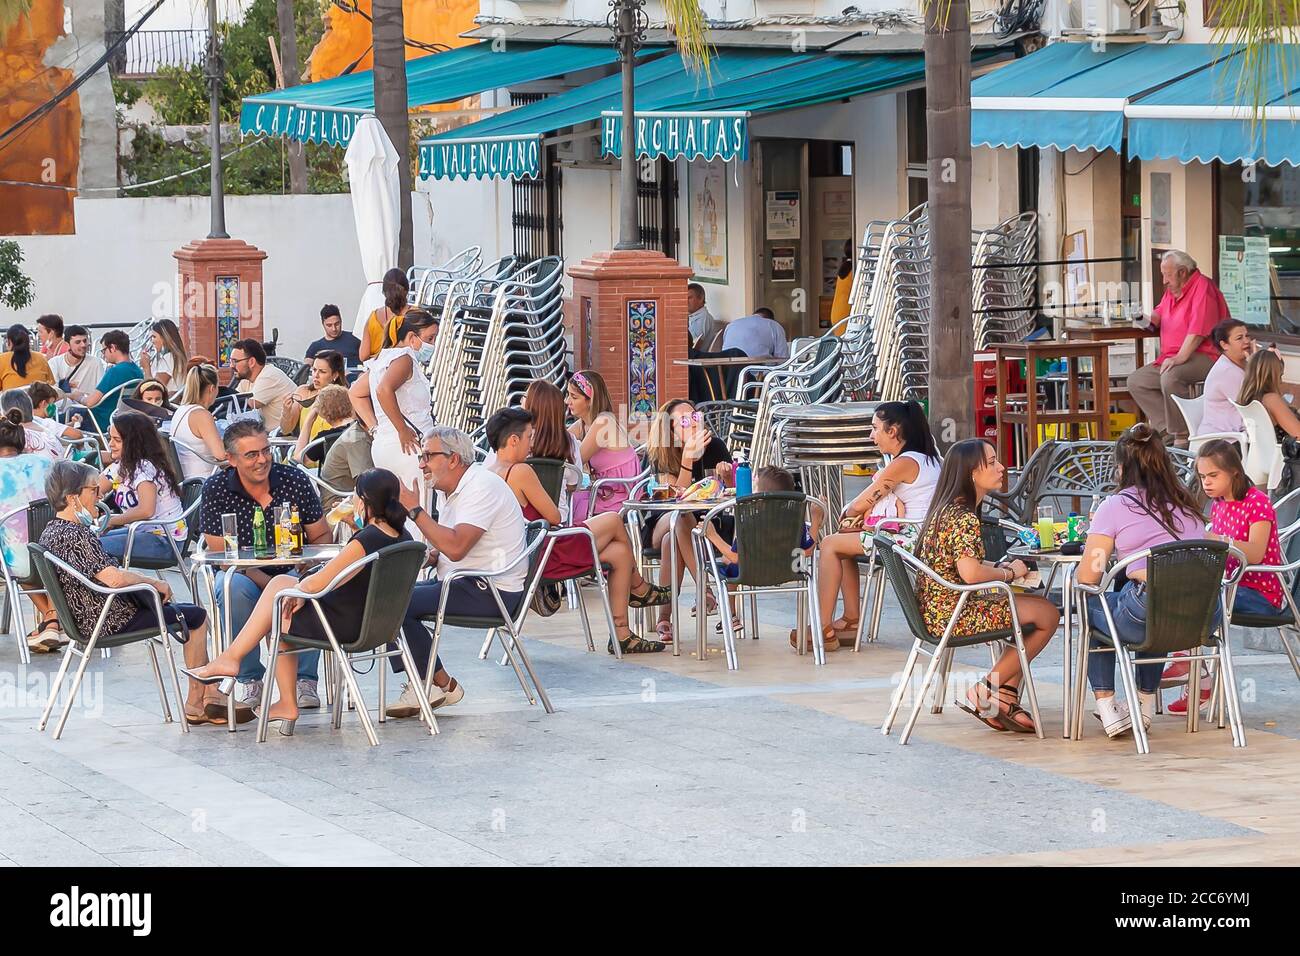 Huelva, Spanien - 17. August 2020: Menschen sitzen auf der Terrasse eines Cafés und Bar das Dorf Valverde del Camino. Die meisten tragen keinen Protecti Stockfoto